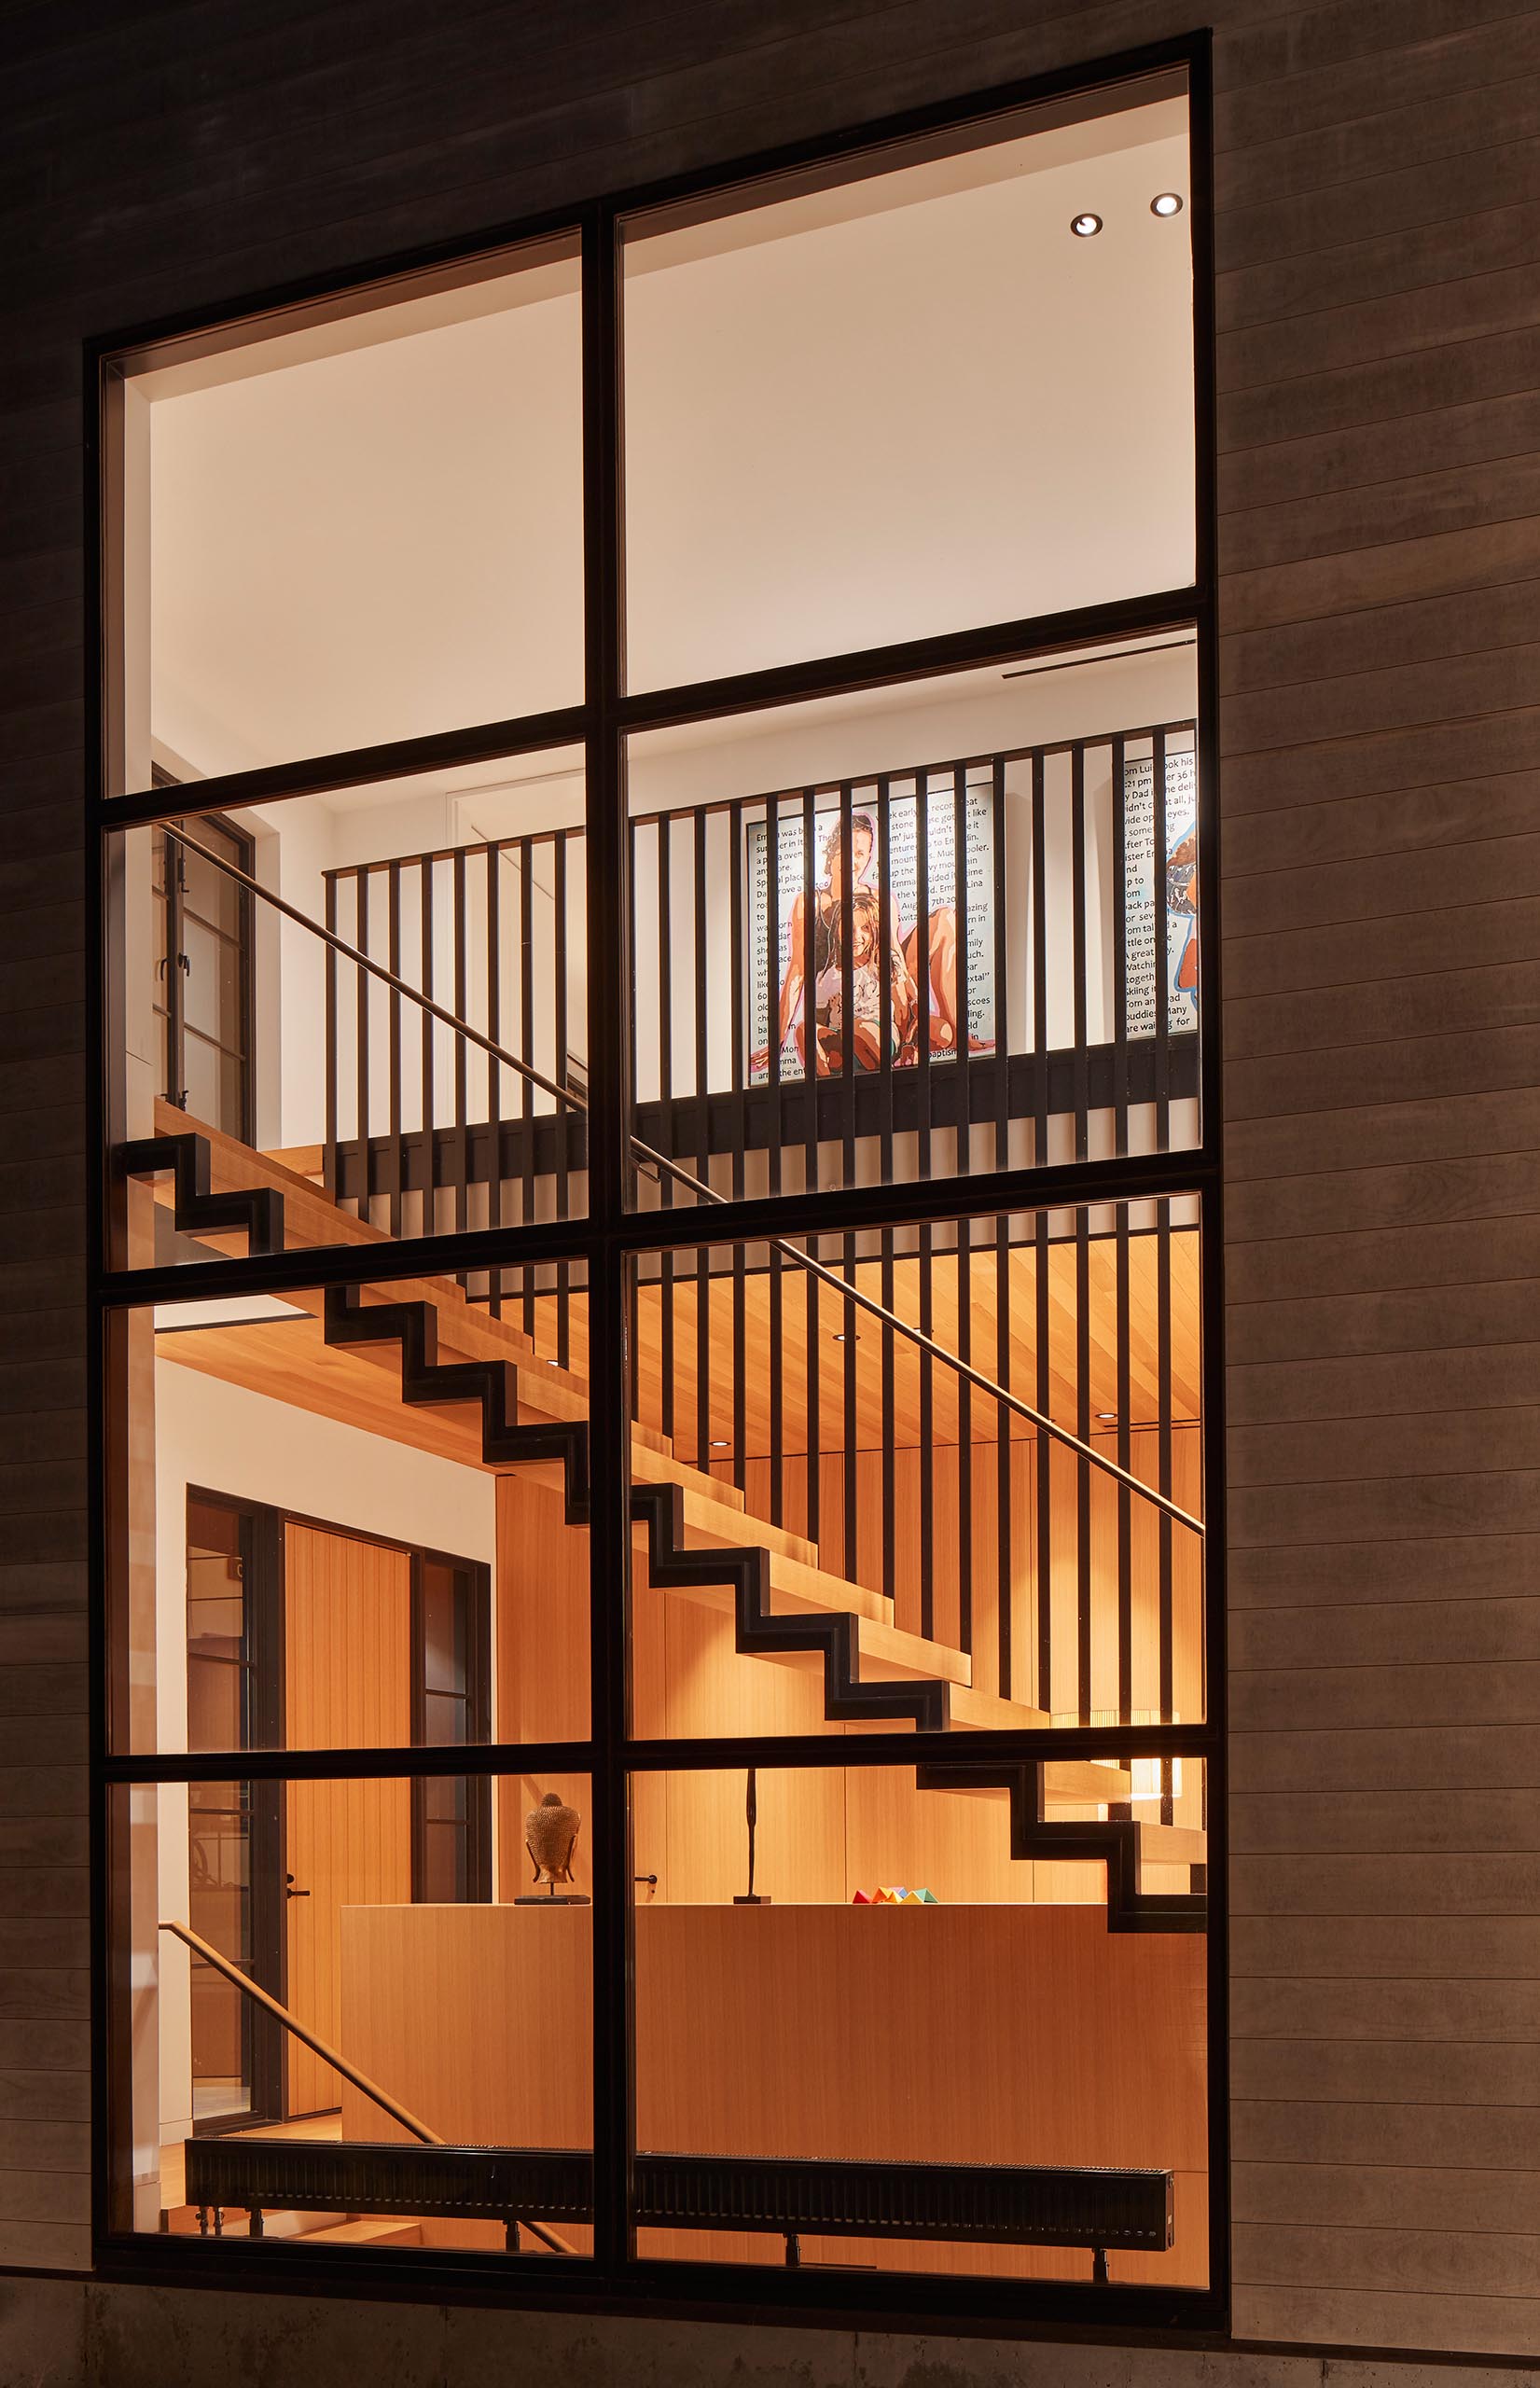 Cửa sổ lớn giới thiệu cầu thang bằng thép và gỗ bên trong nhà.